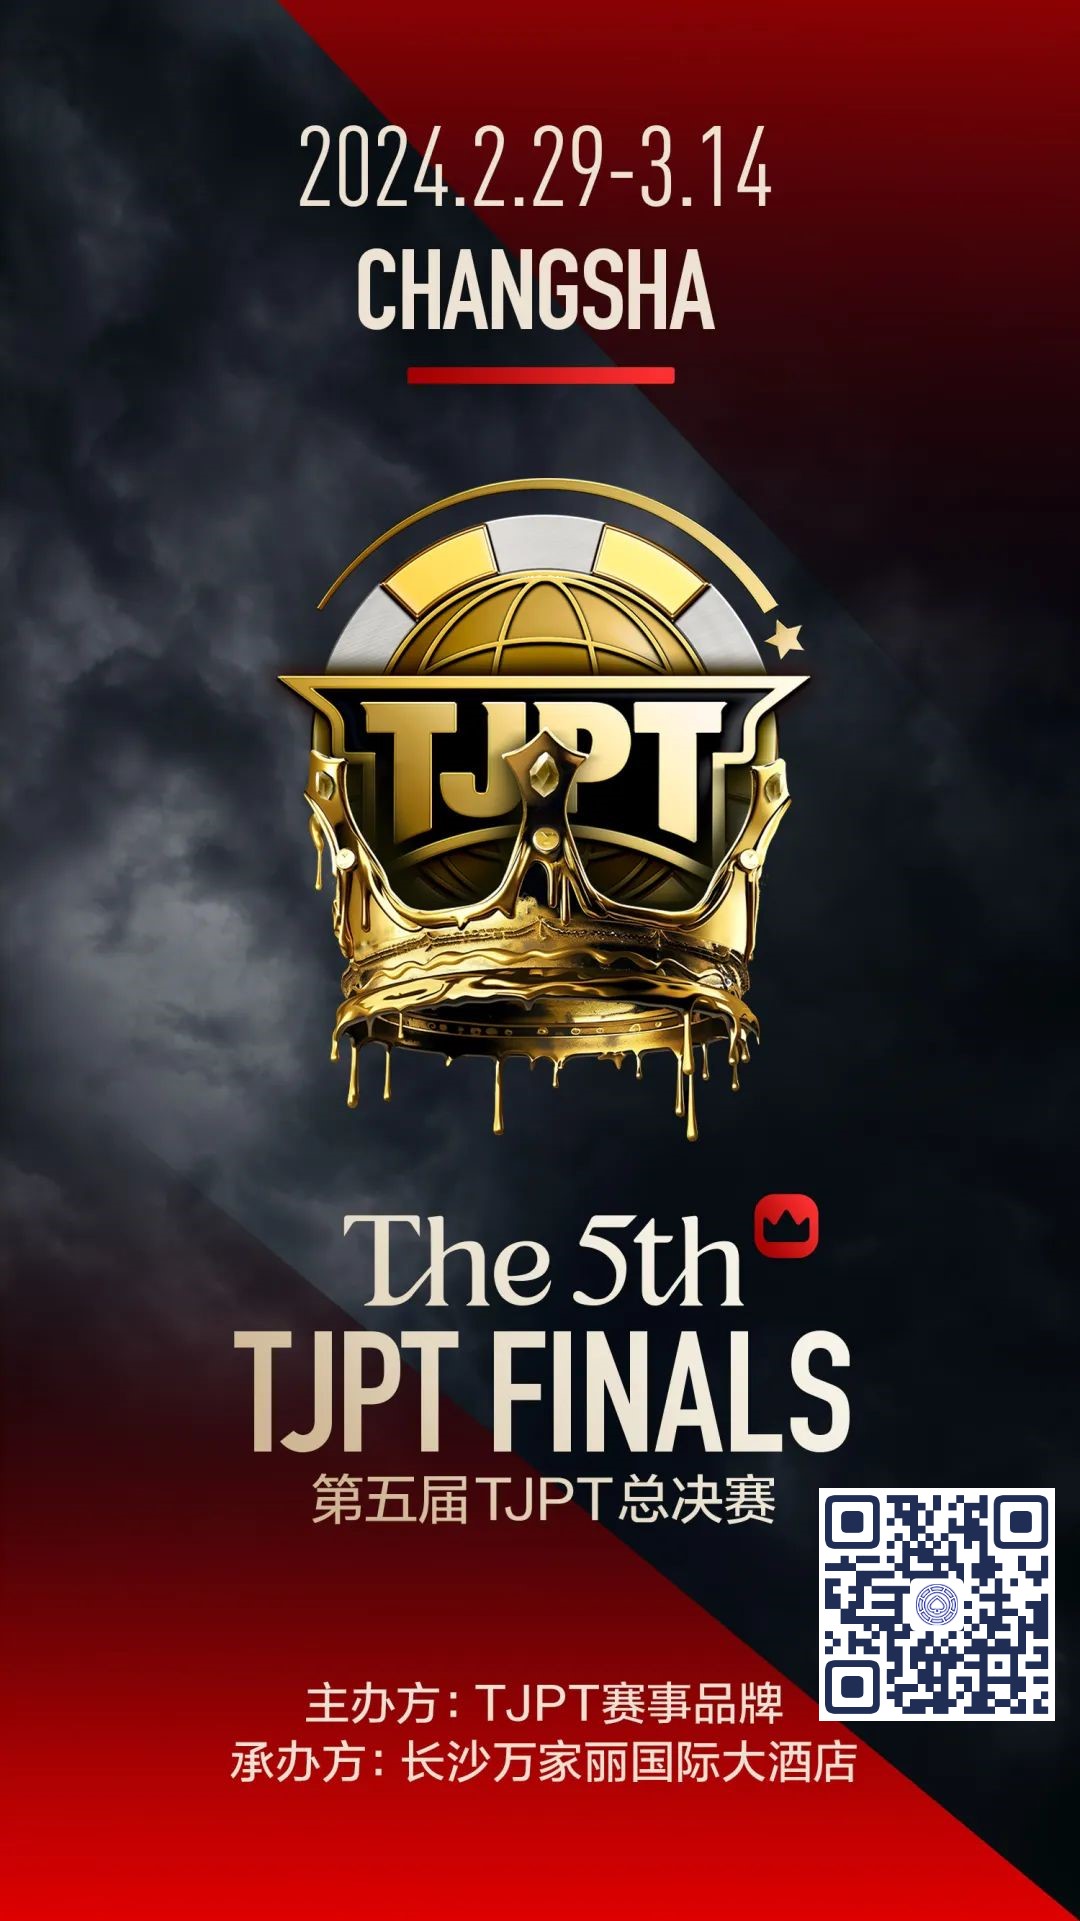 【EV 扑克】赛事官宣丨第五届 TJPT®总决赛落地长沙万家丽国际大酒店！